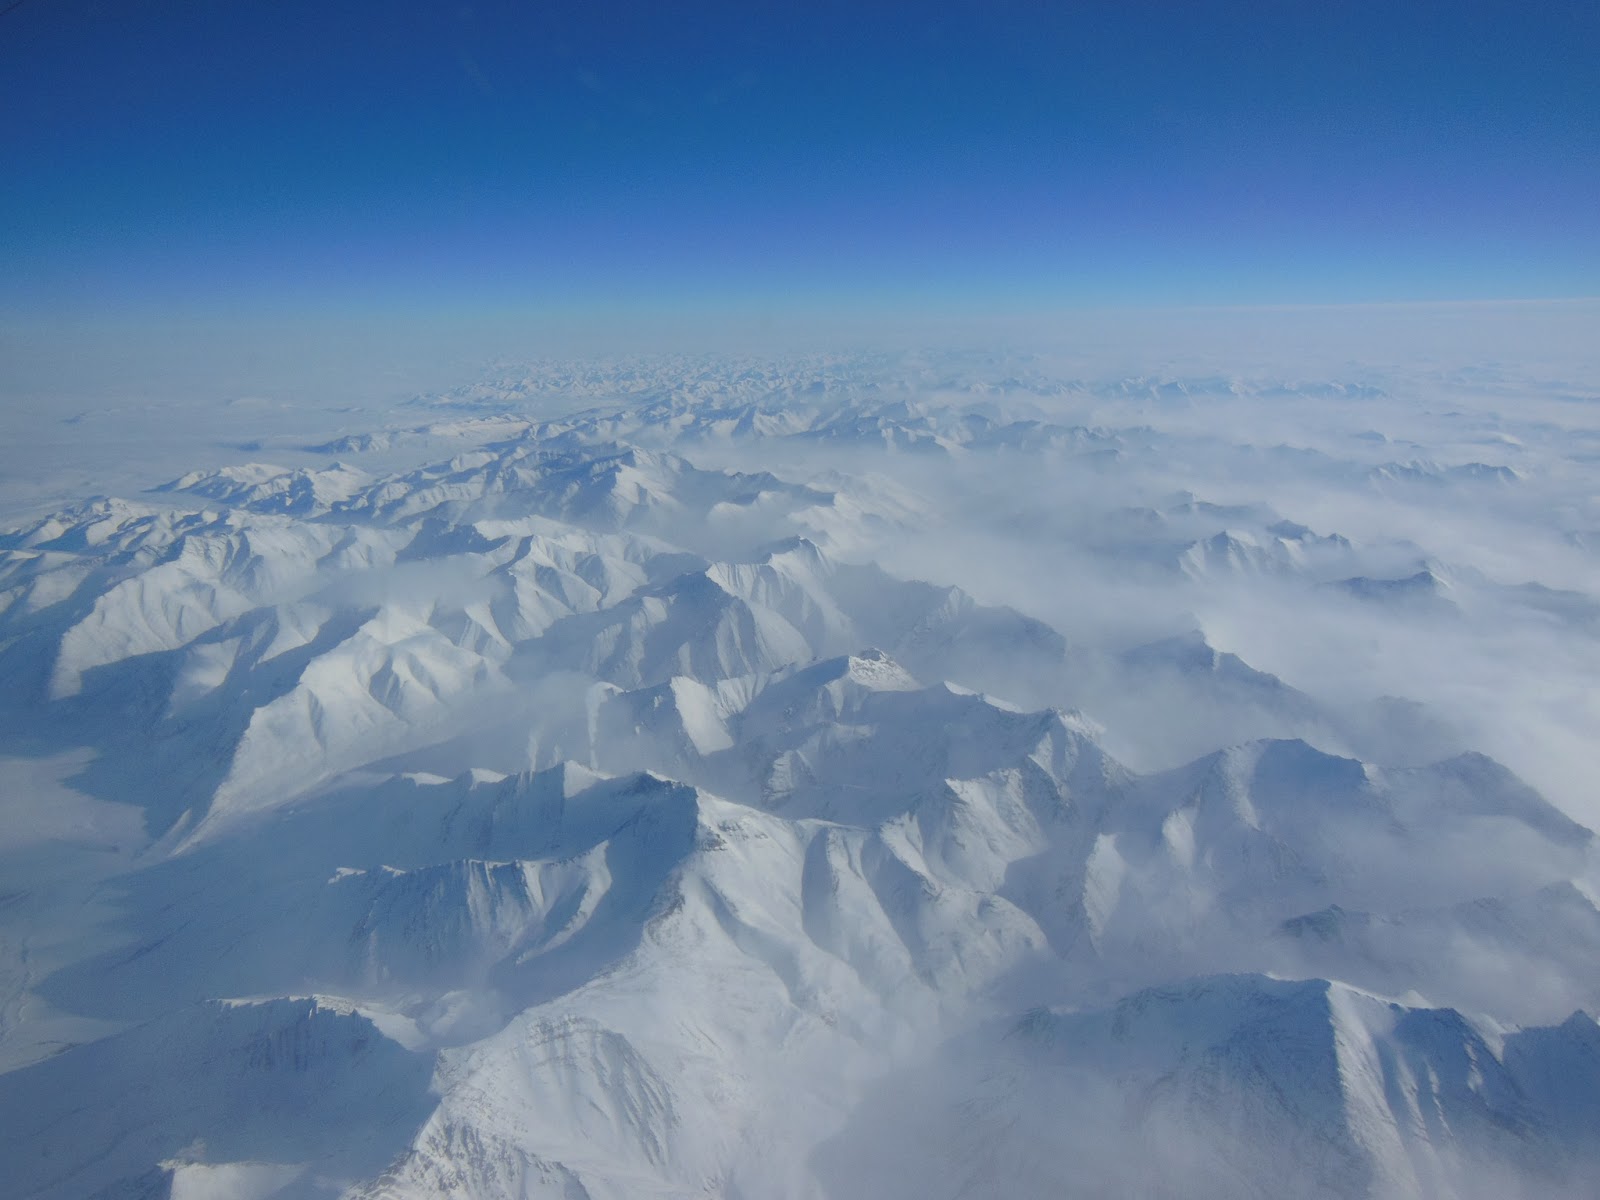 Alaskan Mountains Seen During IceBridge Transit